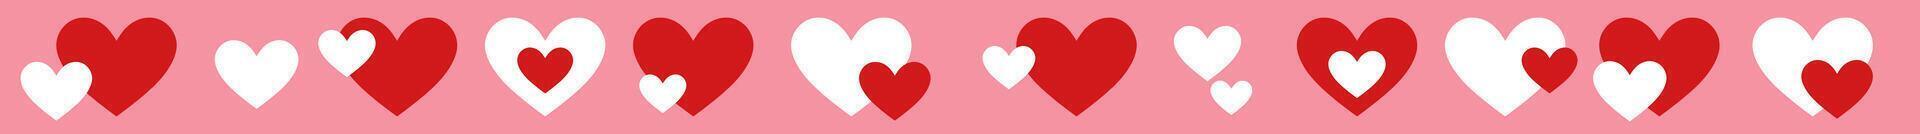 Valentijn dag gemakkelijk herhalen hart grens, vector hand- getrokken harten, naadloos herhaling